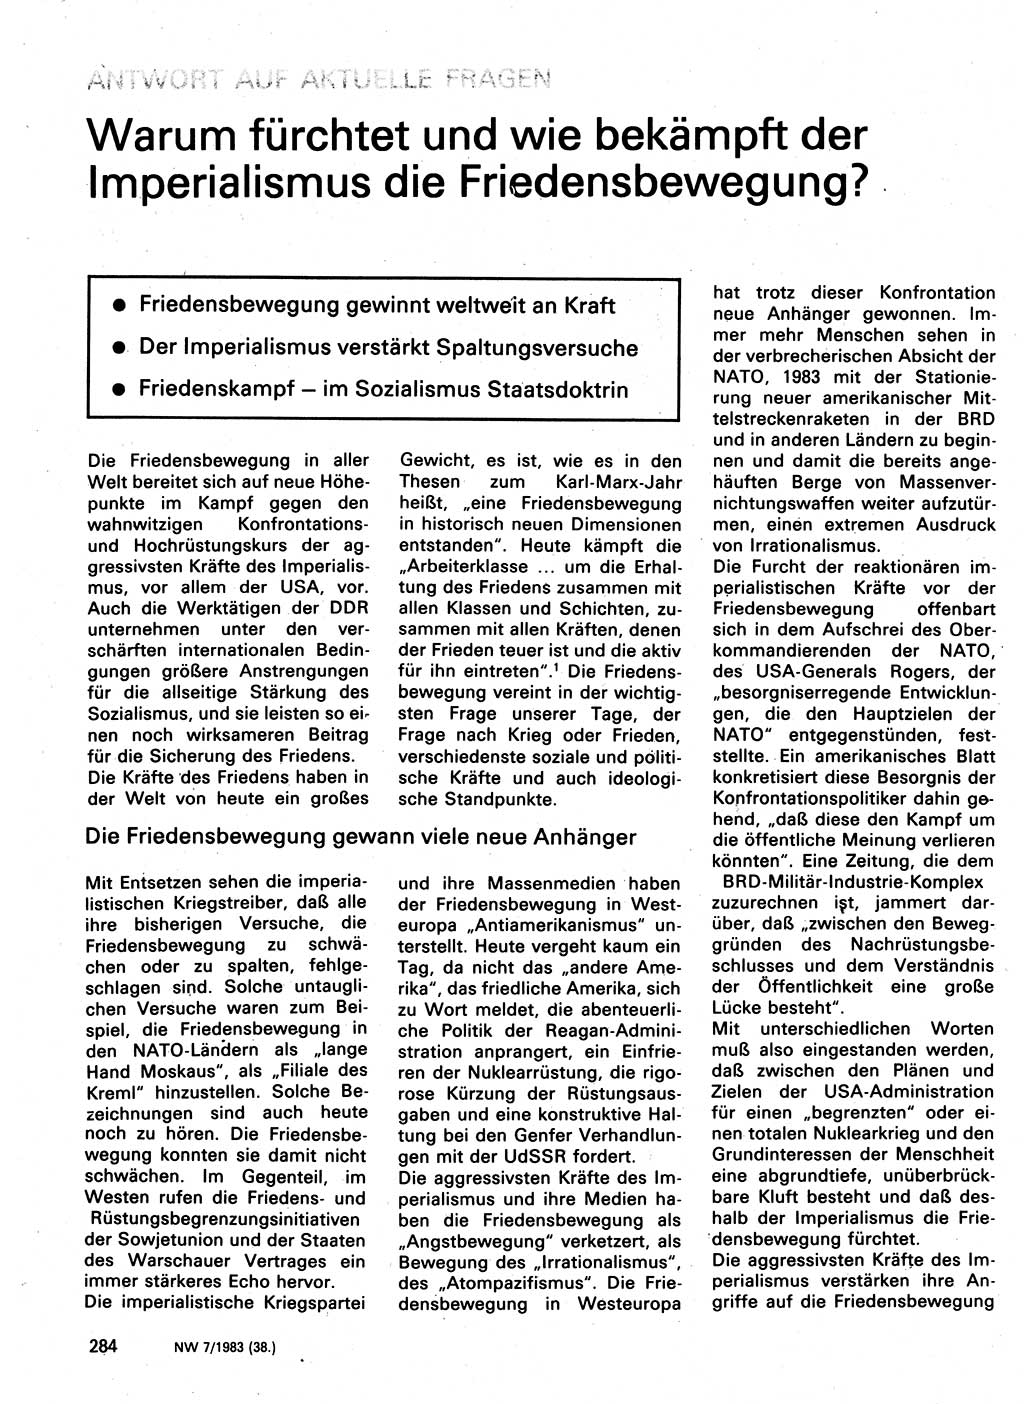 Neuer Weg (NW), Organ des Zentralkomitees (ZK) der SED (Sozialistische Einheitspartei Deutschlands) für Fragen des Parteilebens, 38. Jahrgang [Deutsche Demokratische Republik (DDR)] 1983, Seite 284 (NW ZK SED DDR 1983, S. 284)